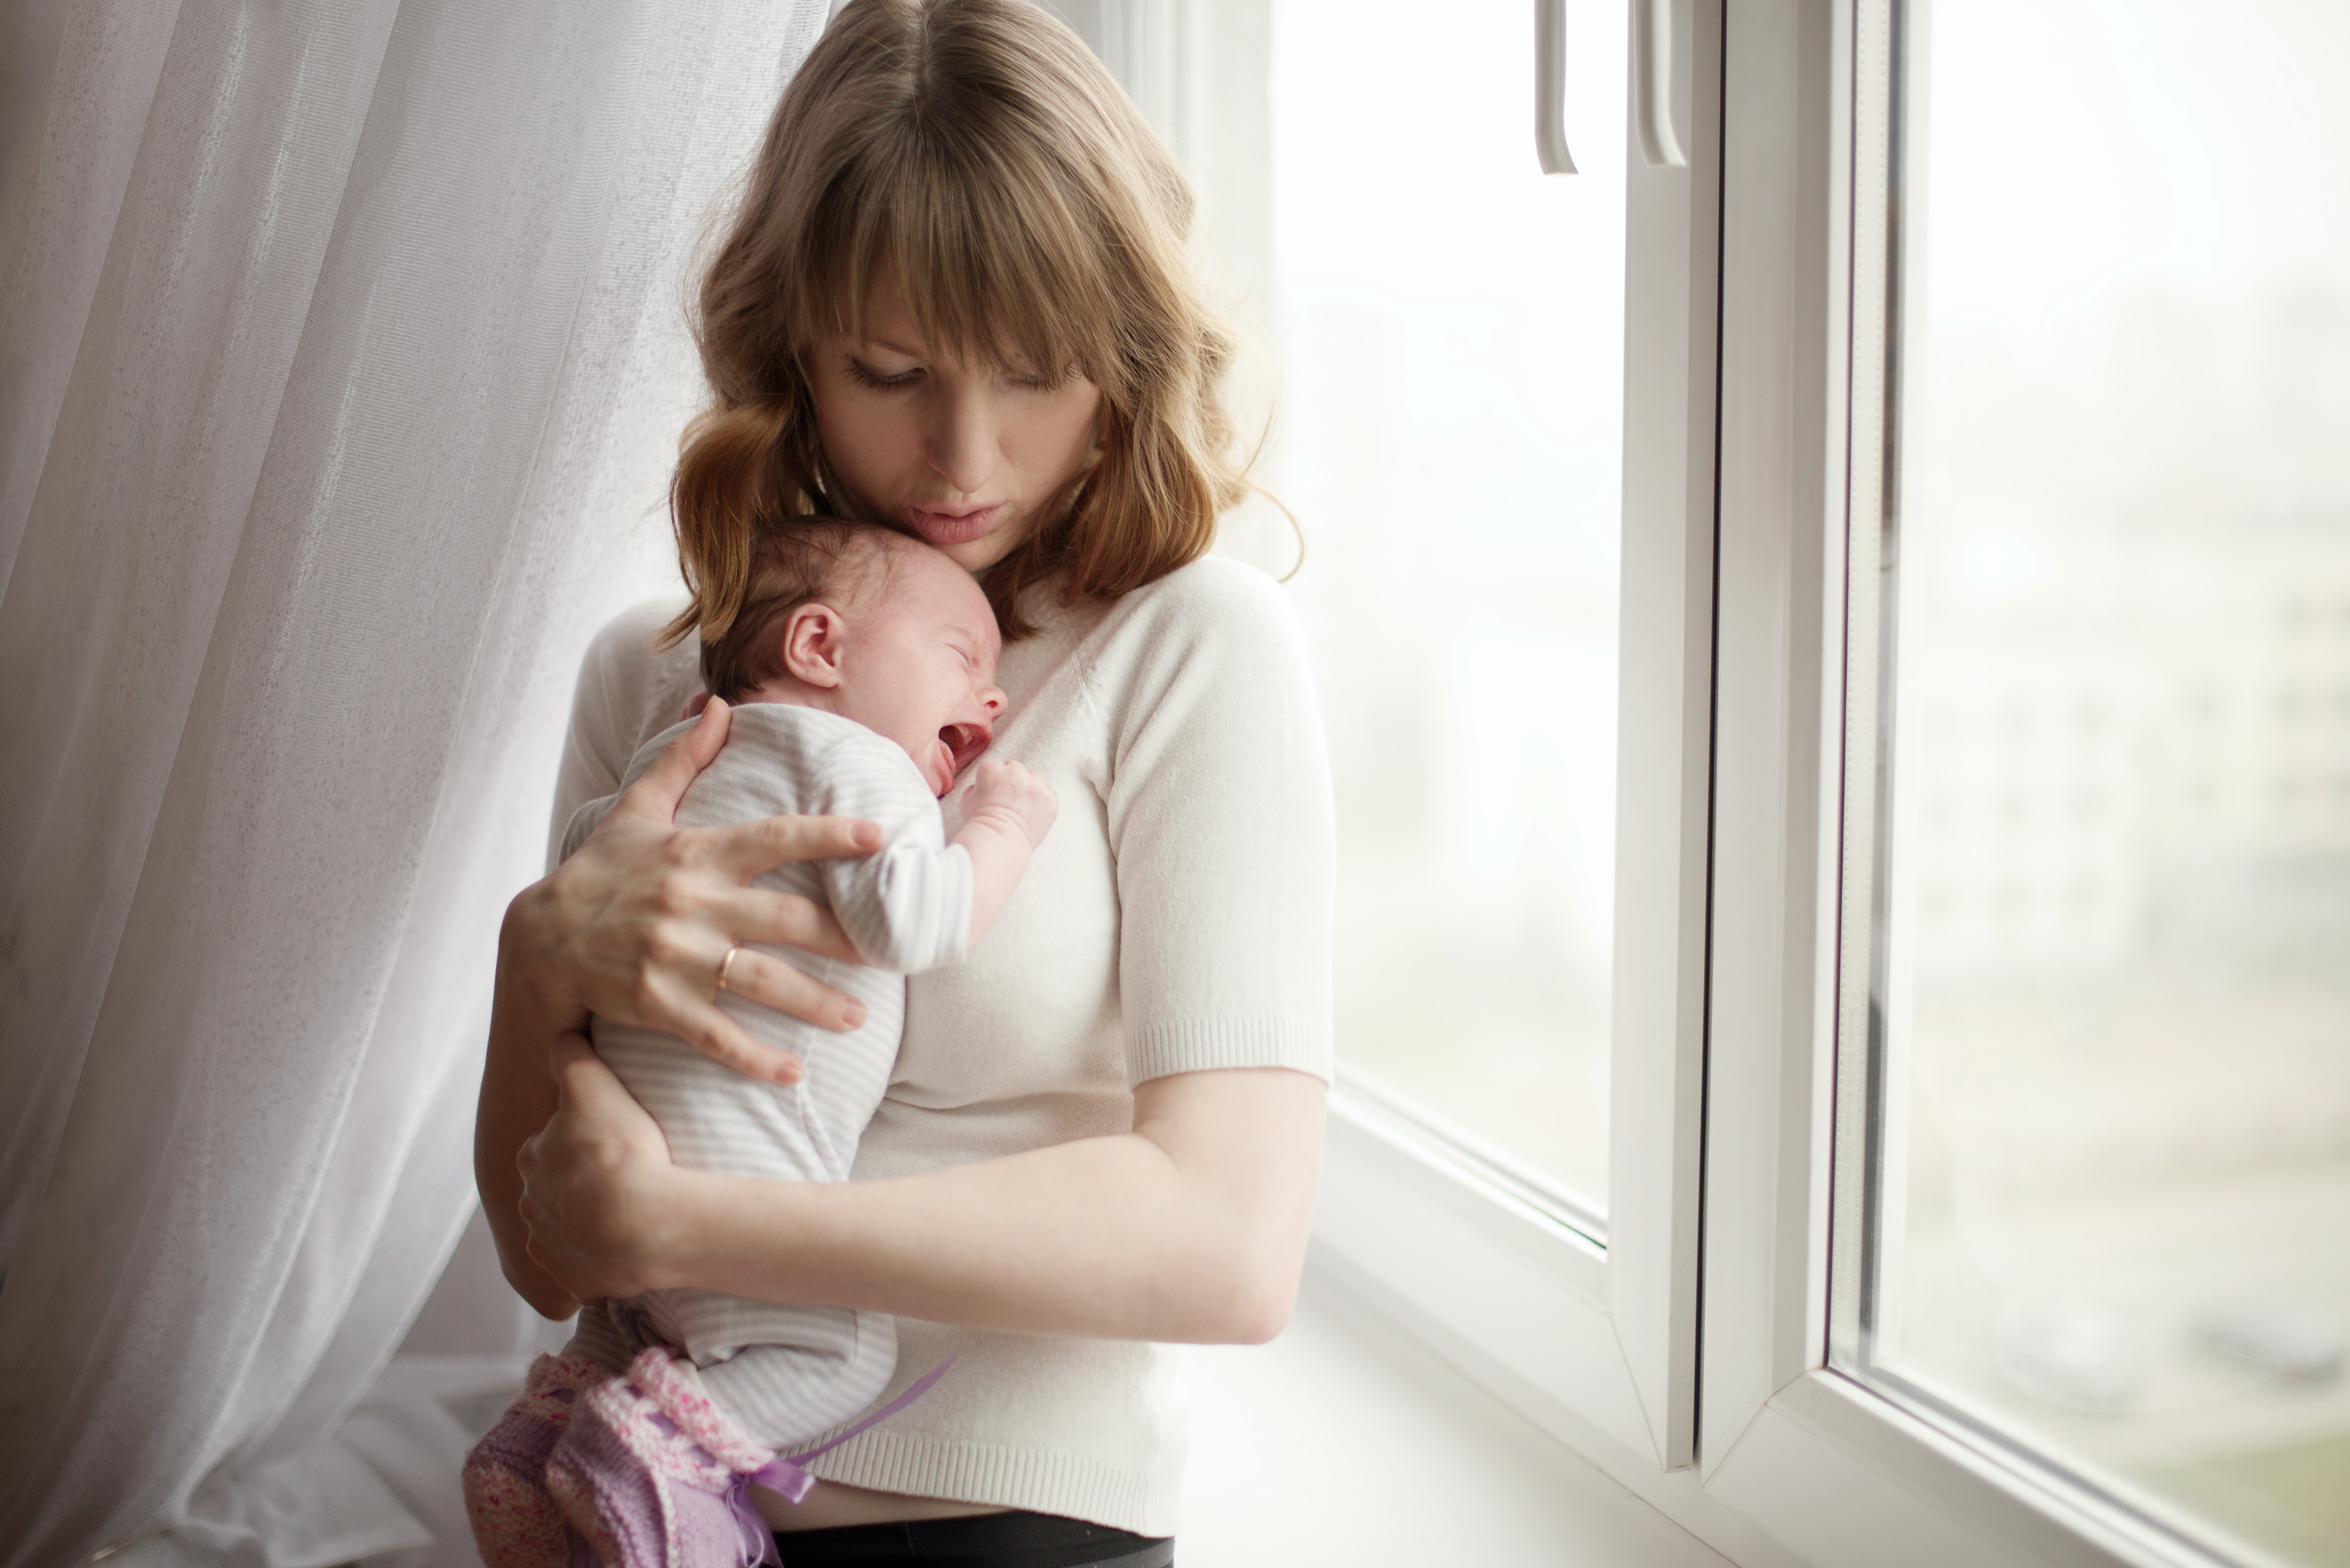 Une mère qui essaie de calmer son bébé qui pleure | Source : Shutterstock